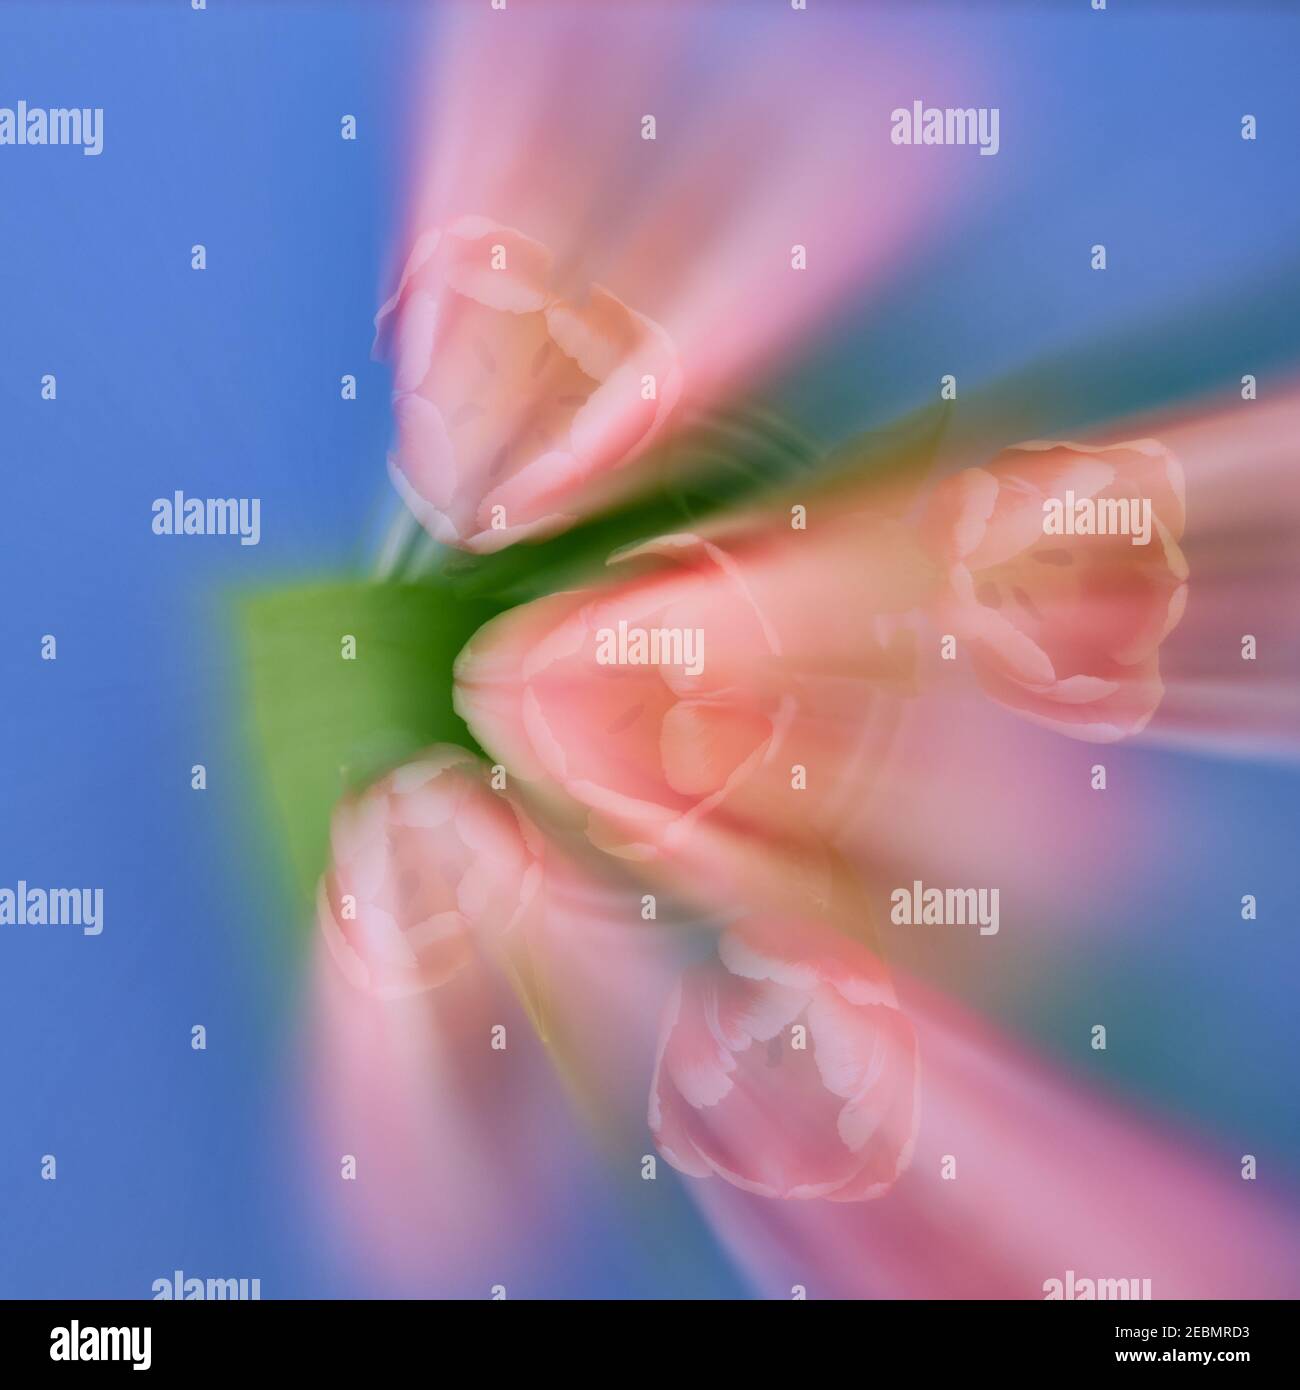 La rafale de zoom décentrée crée un résumé des tulipes en train de rationner d'un côté. Le rouge, le vert et le bleu dominants créent une triade de couleurs harmonieuse. Banque D'Images